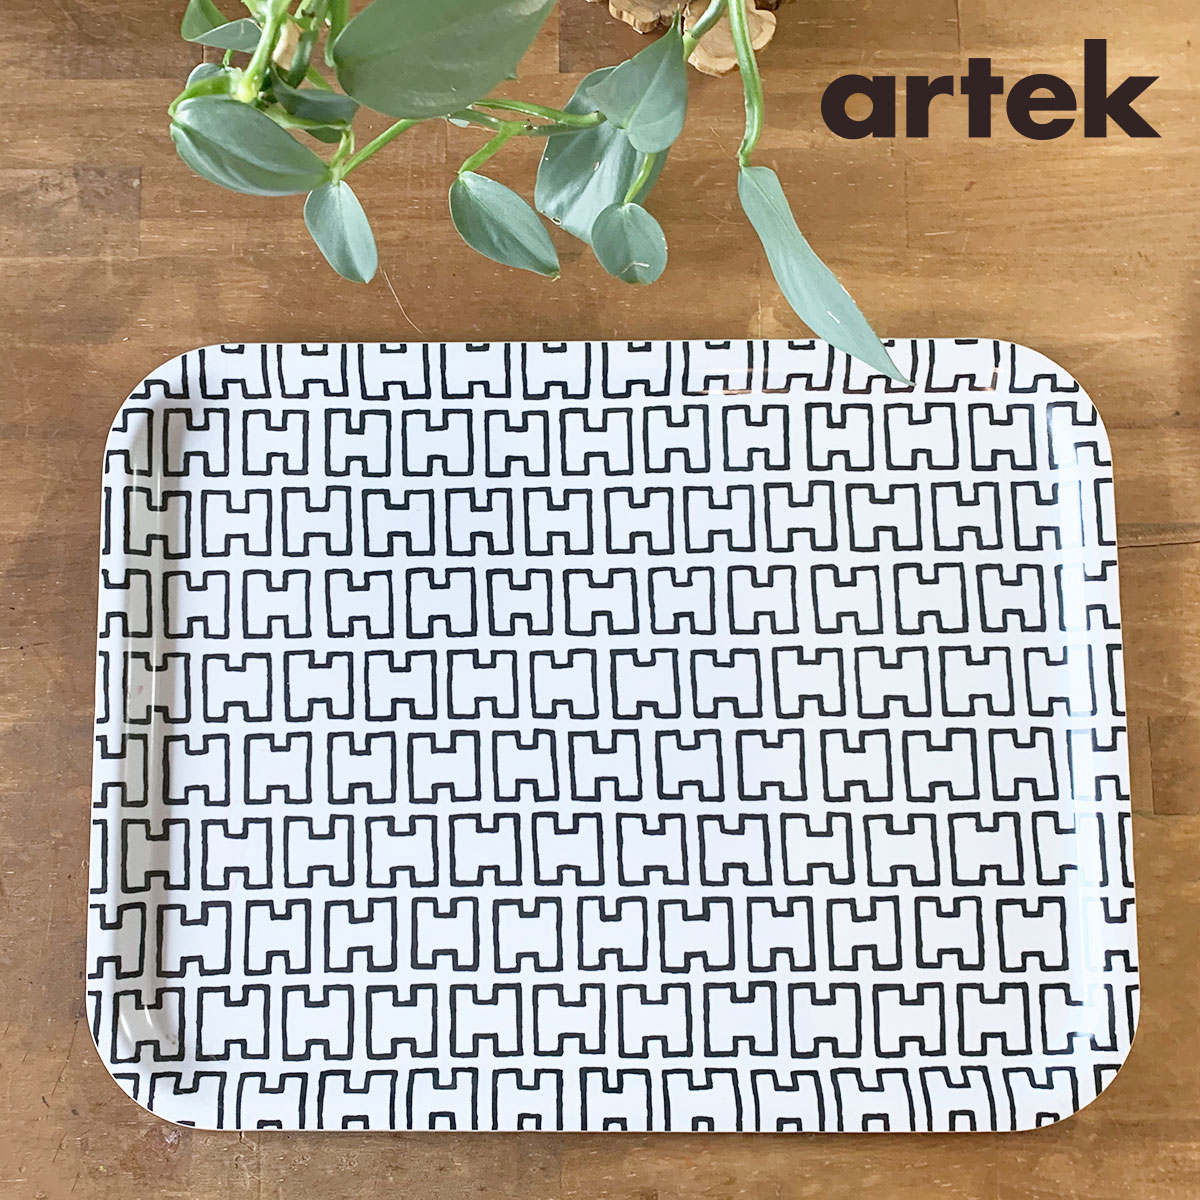 Artek (アルテック) トレイ(L) H55 おしゃれな北欧キッチン雑貨 トレー ギフト トレー おぼん プレゼントにも人気 北欧を代表するアアルトデザイン ブラックホワイト エイチゴーゴー フィンランドのオシャレ雑貨 トレイ